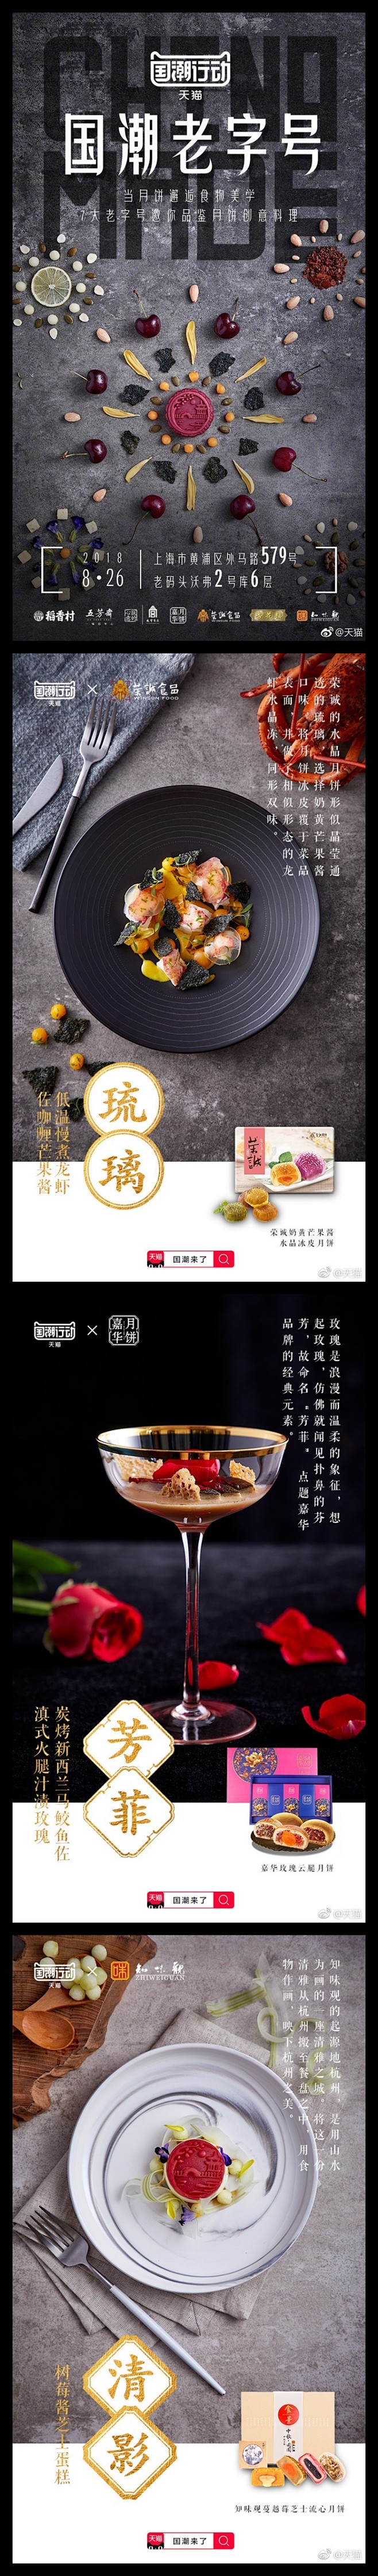 国潮中国风美食海报 (1)